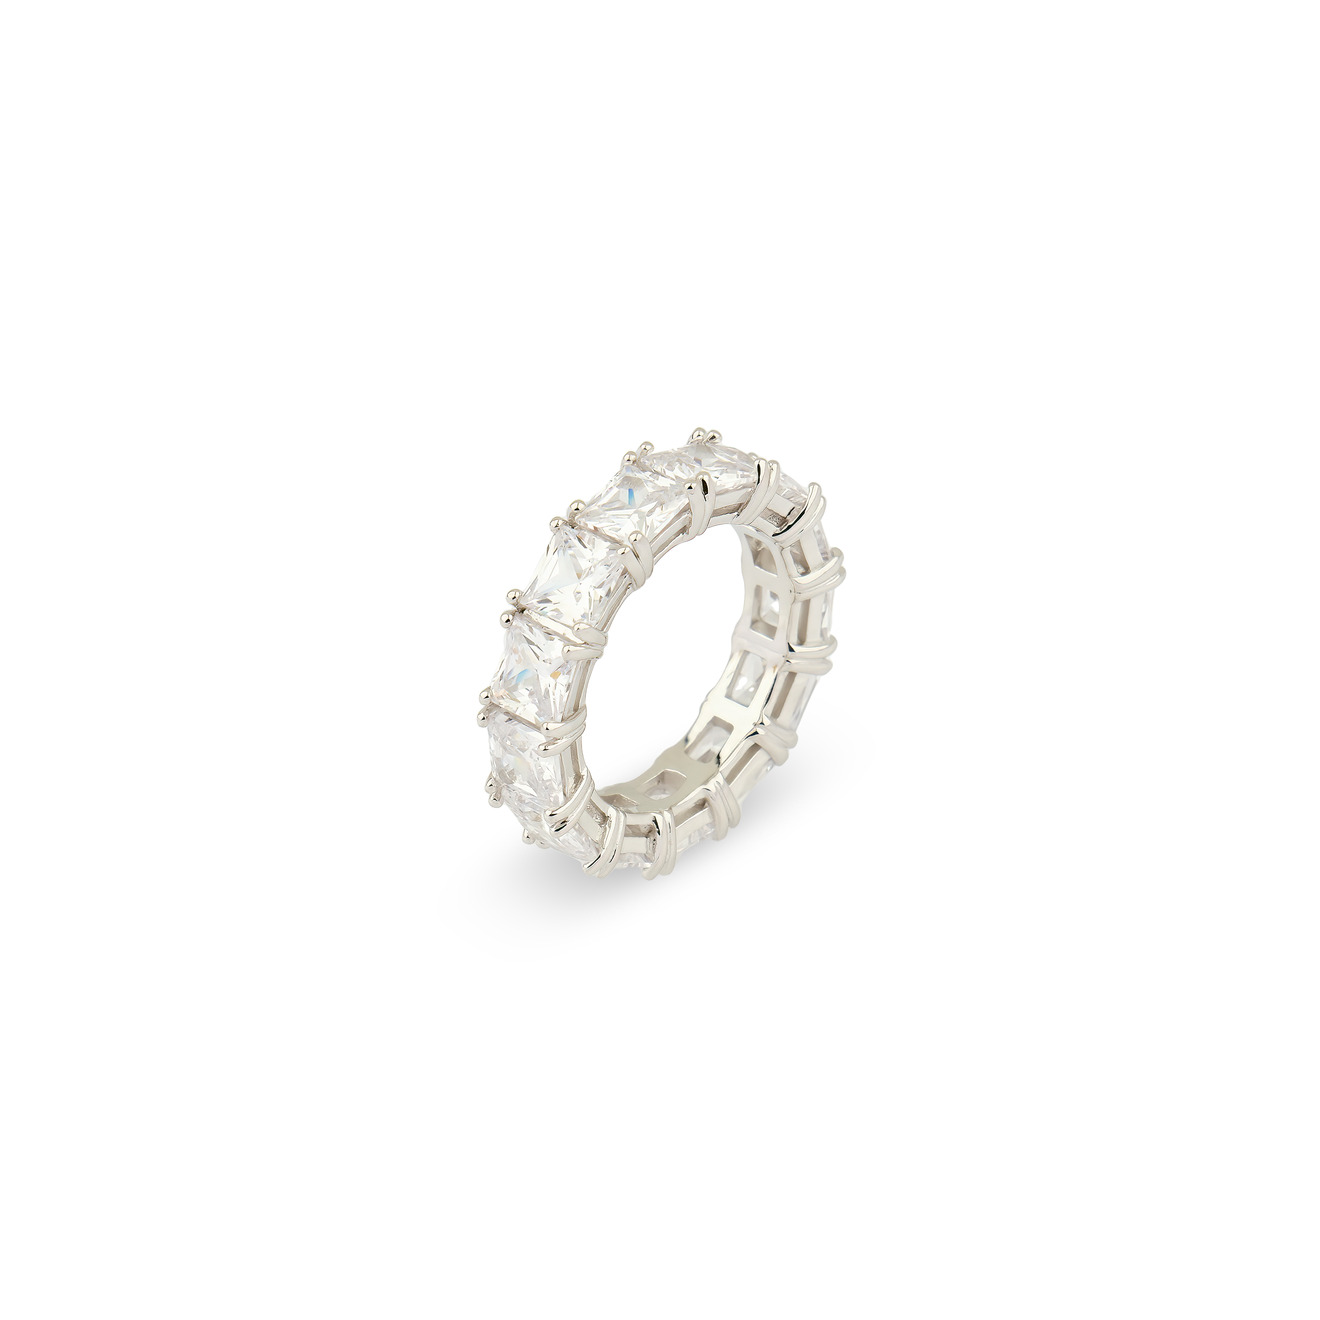 Holy Silver Кольцо из серебра с дорожкой из белых кристаллов skye покрытое розовым золотом квадратное кольцо из серебра с дорожкой из белых кристаллов